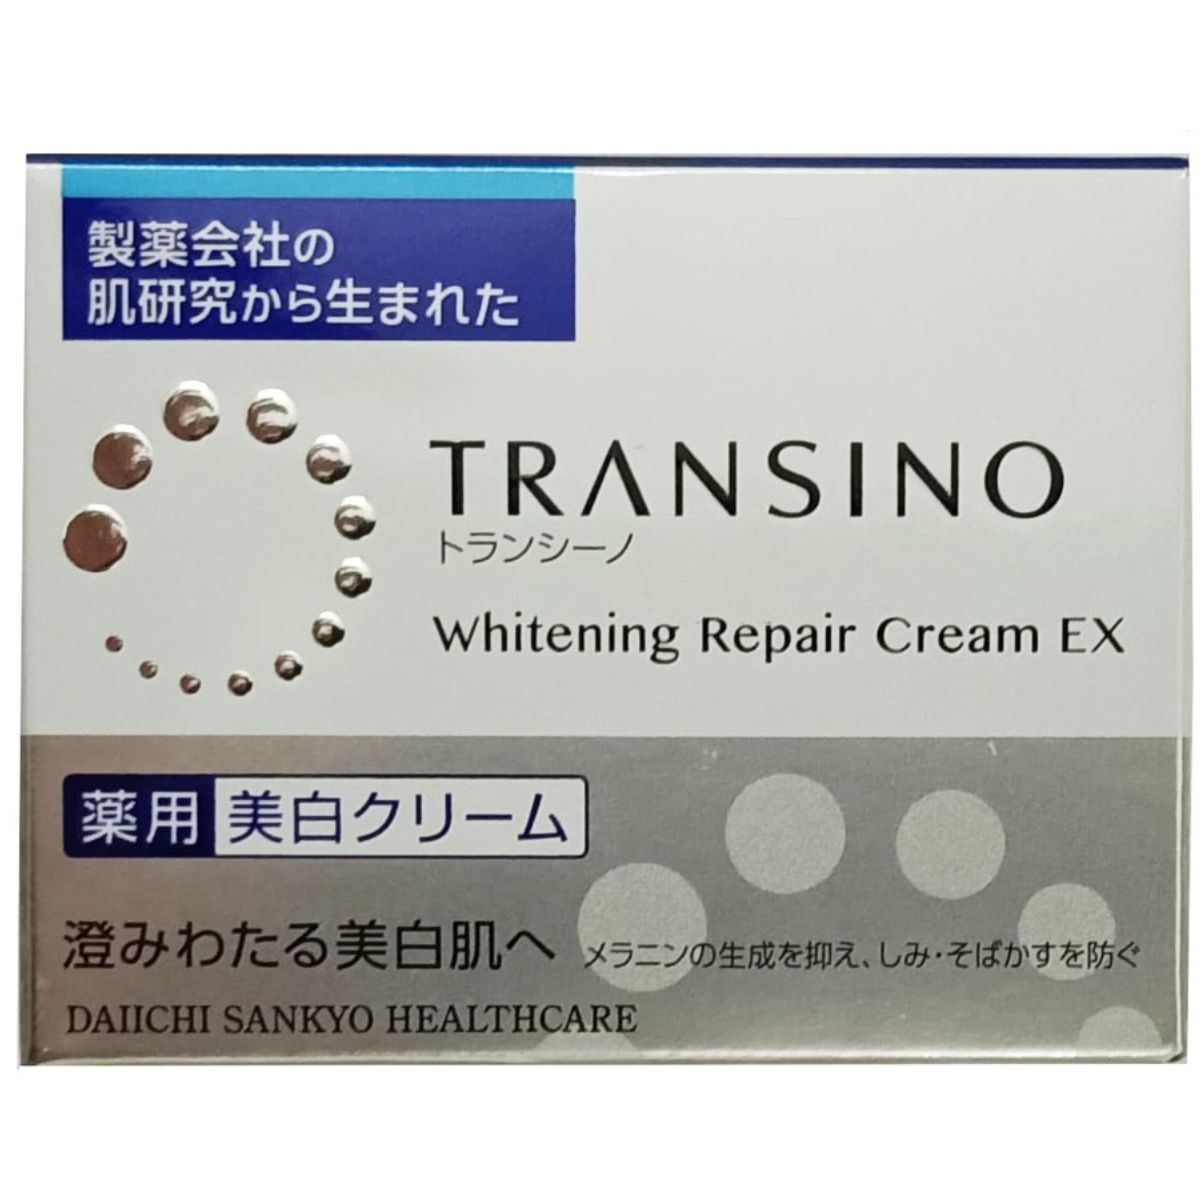 Kem Hỗ Trợ Dưỡng Trắng Da Ban Đêm Transino Whitening Repair Cream